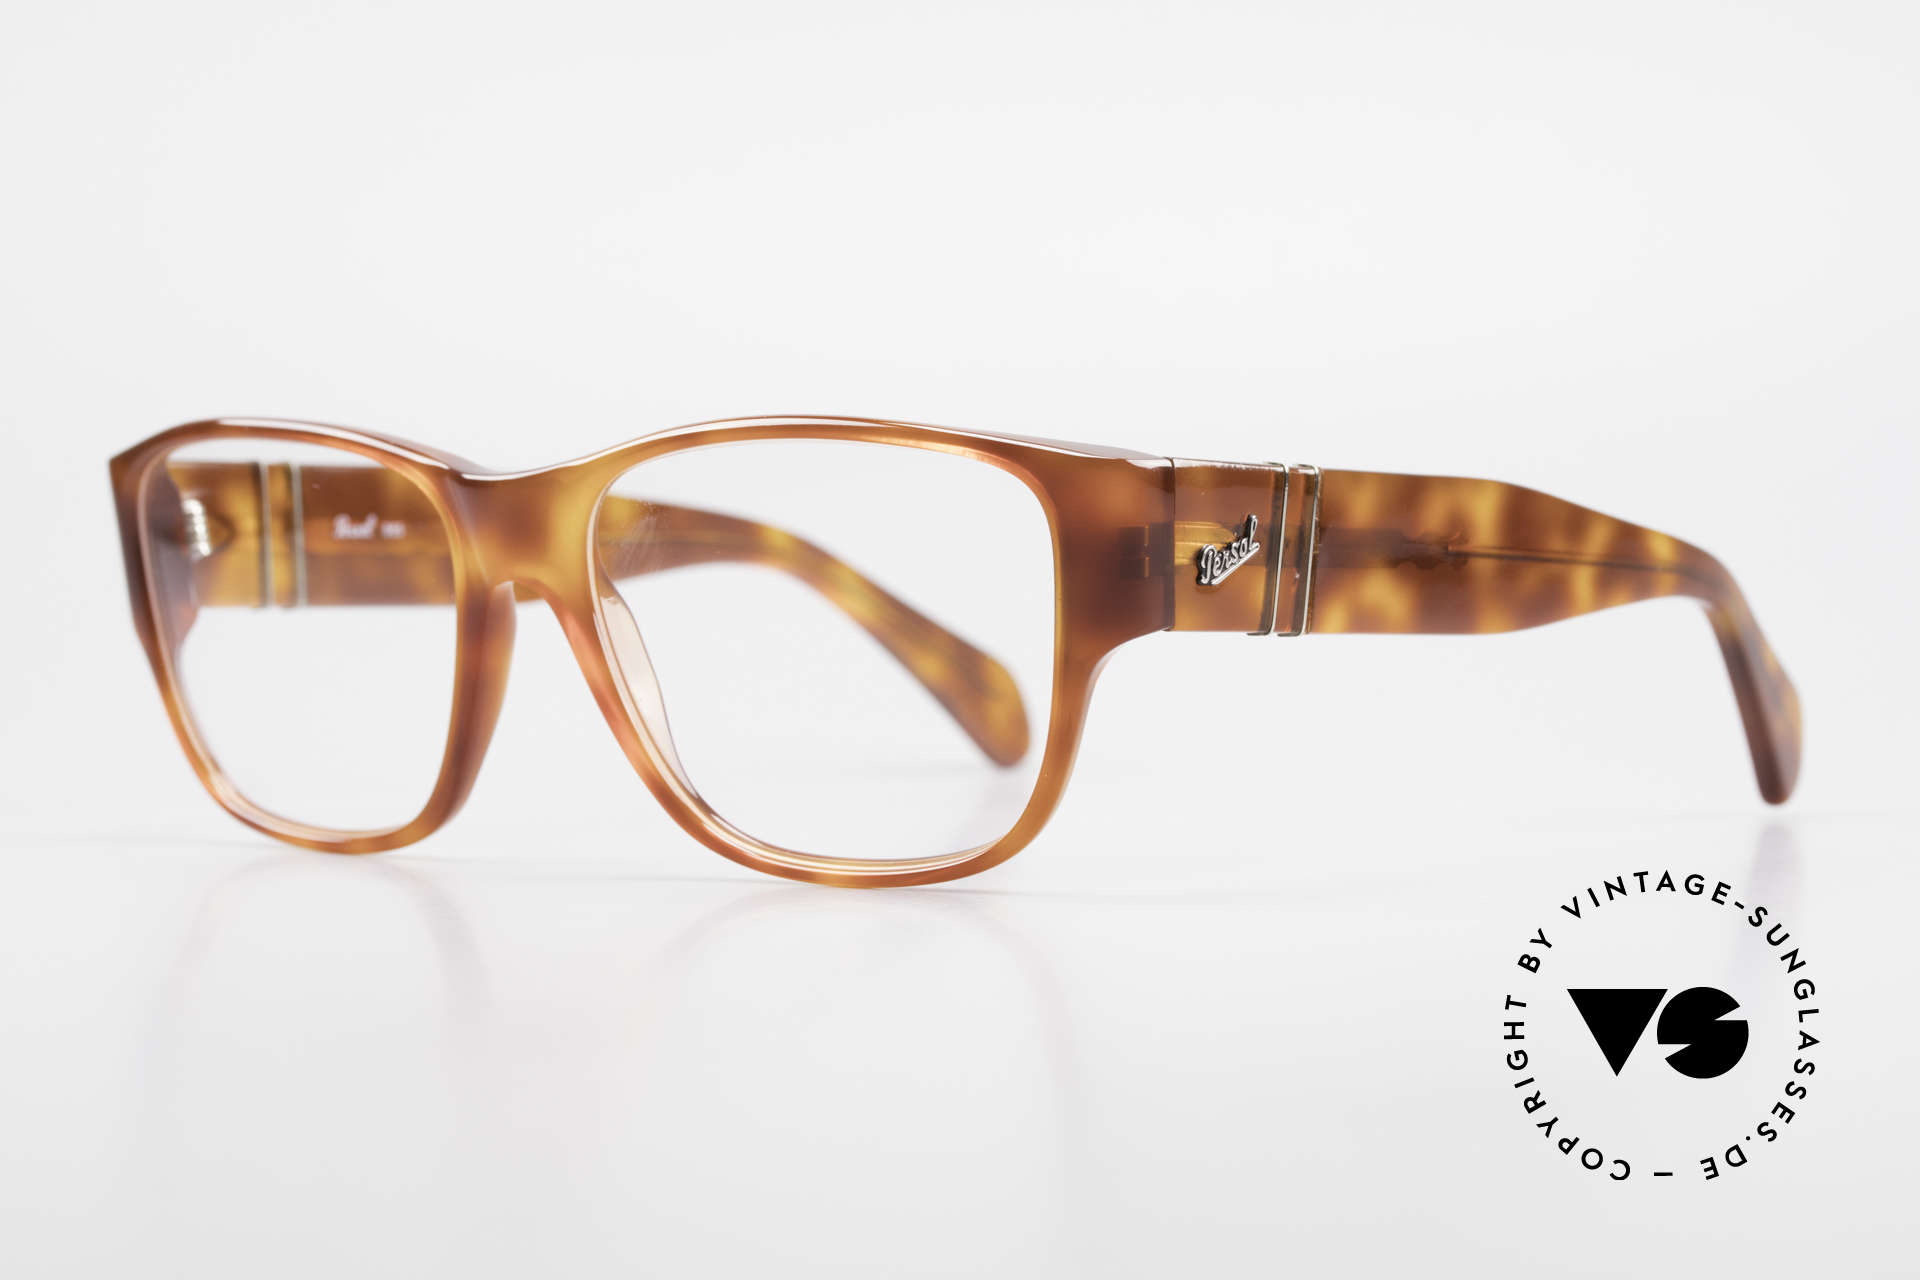 Persol 856 Striking Men's Vintage Frame, unworn (like all our vintage PERSOL glasses), Made for Men